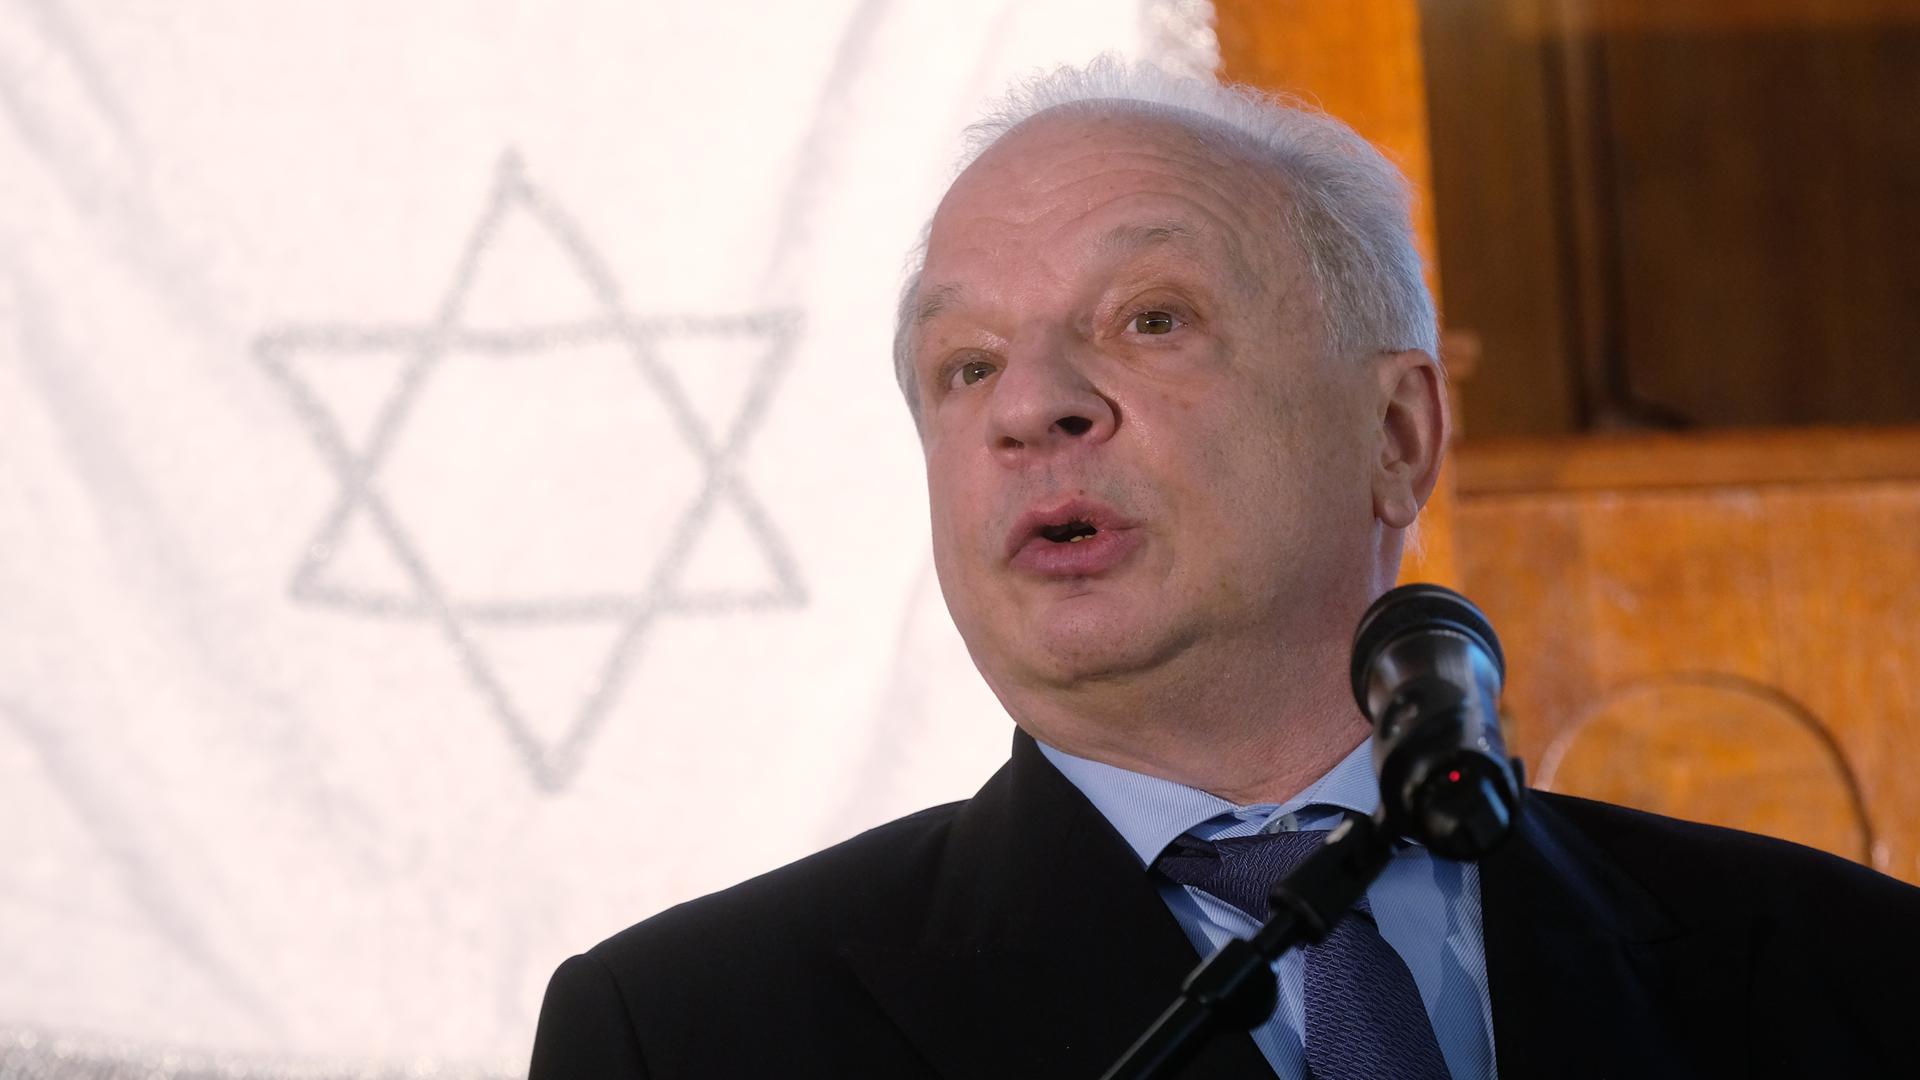 Maram Stern, Vizepräsident des Jüdischen Weltkongresses, spricht in einer Synagoge.